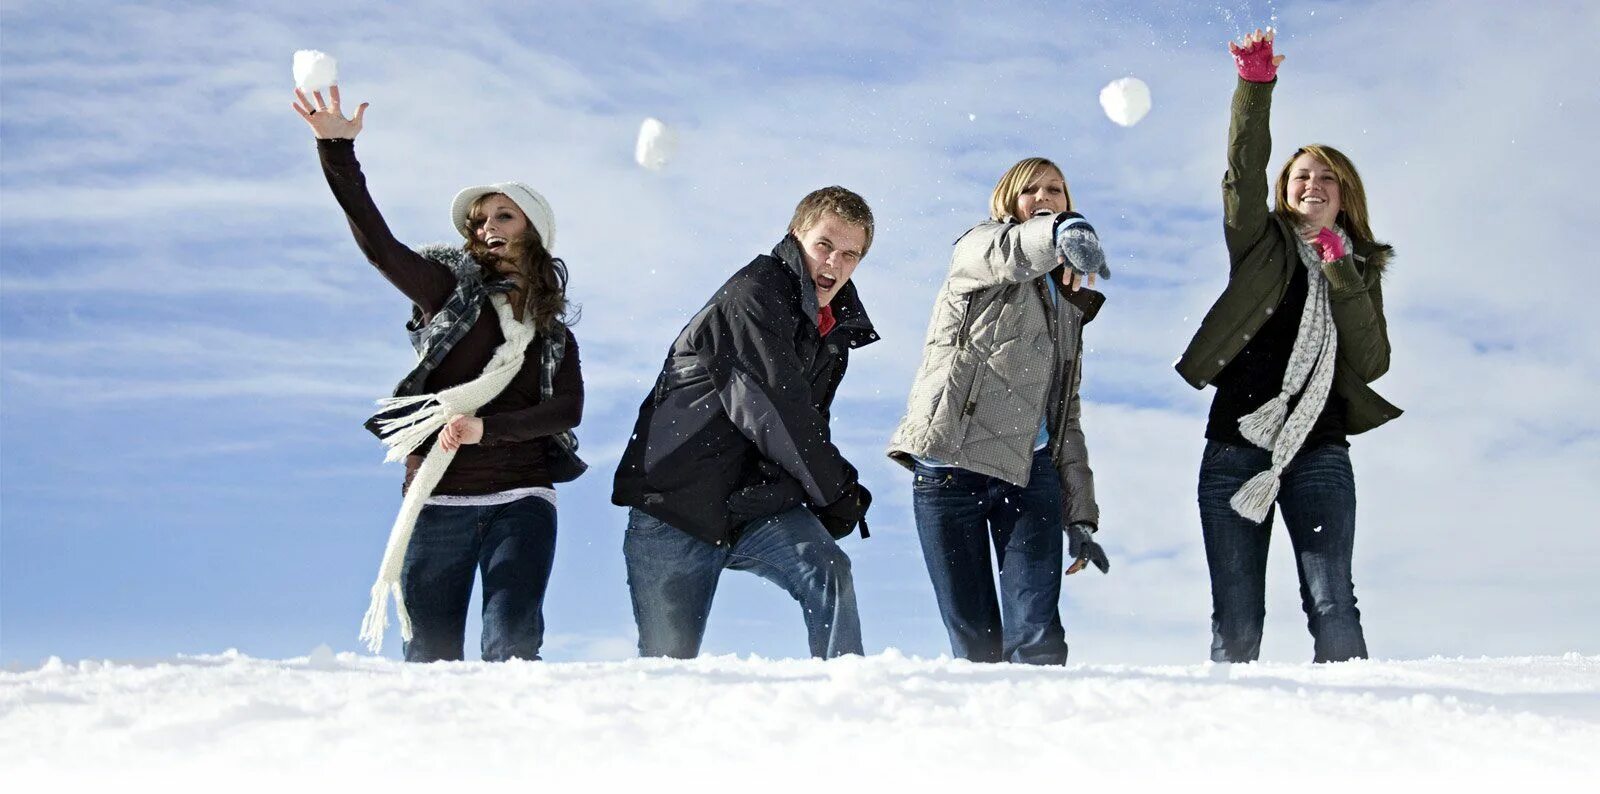 Игра в снежки. Люди зимы. Прогулка с друзьями зимой. Подростки зимой.